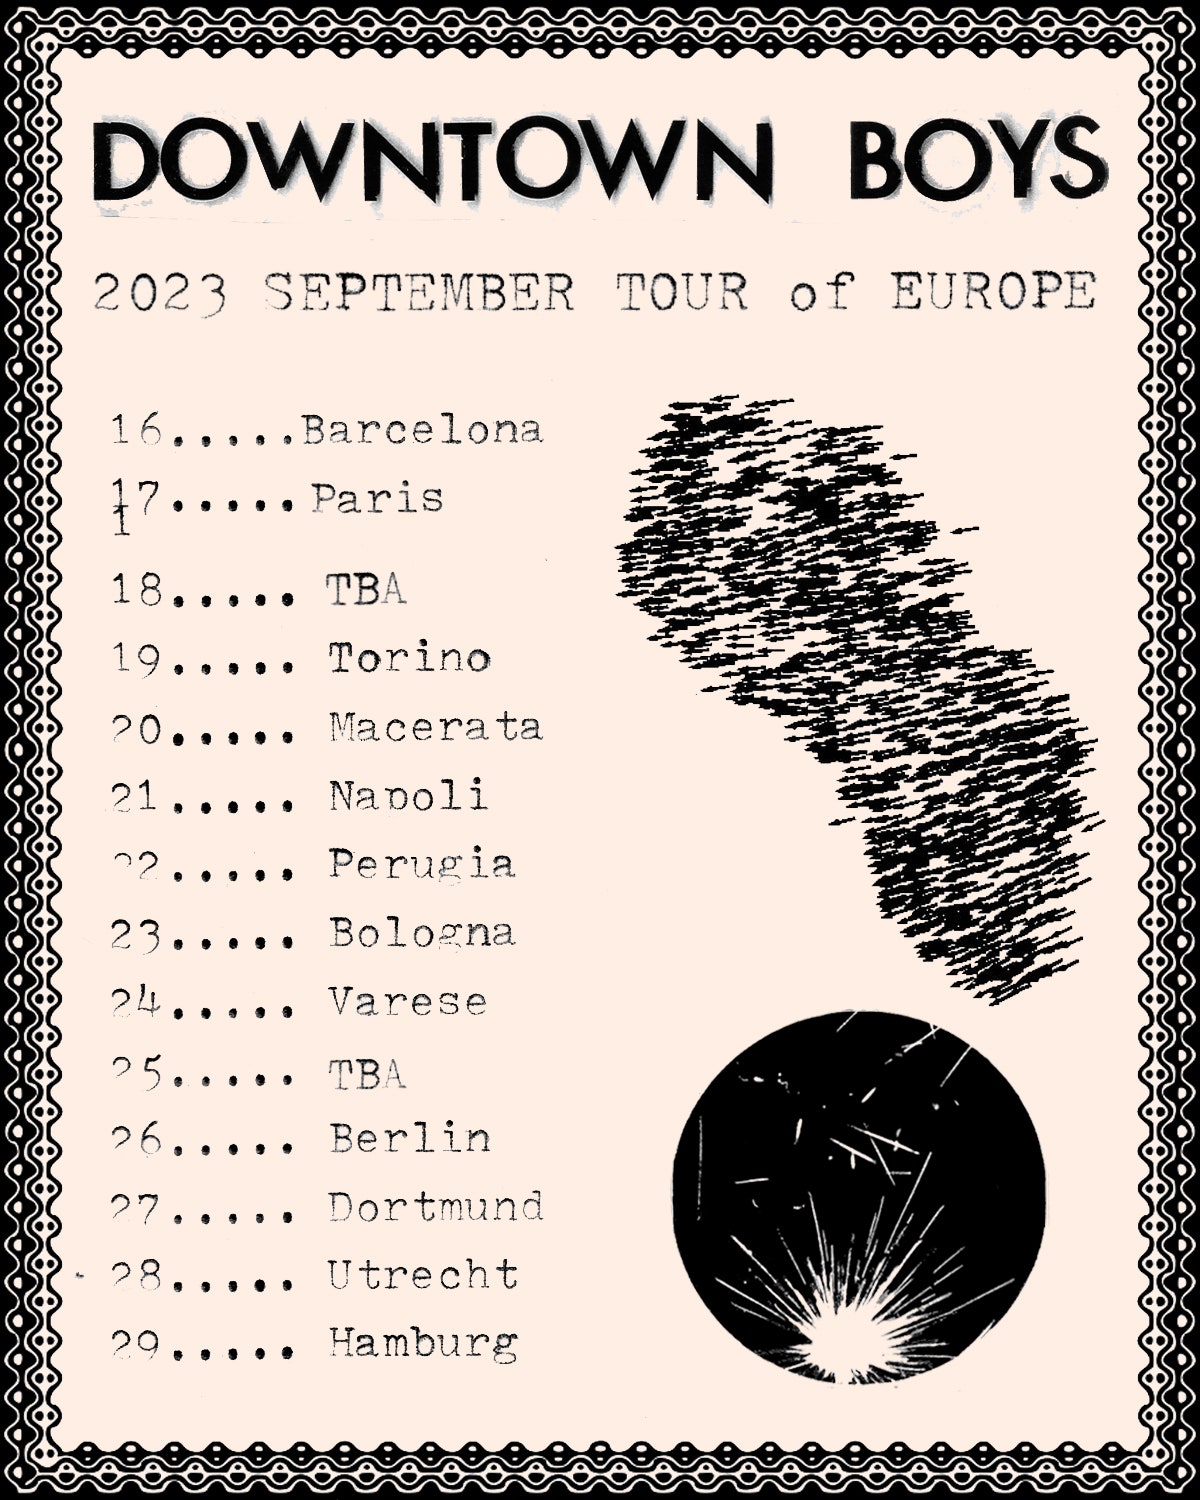 Les Downtown Boys annoncent une tournée européenne